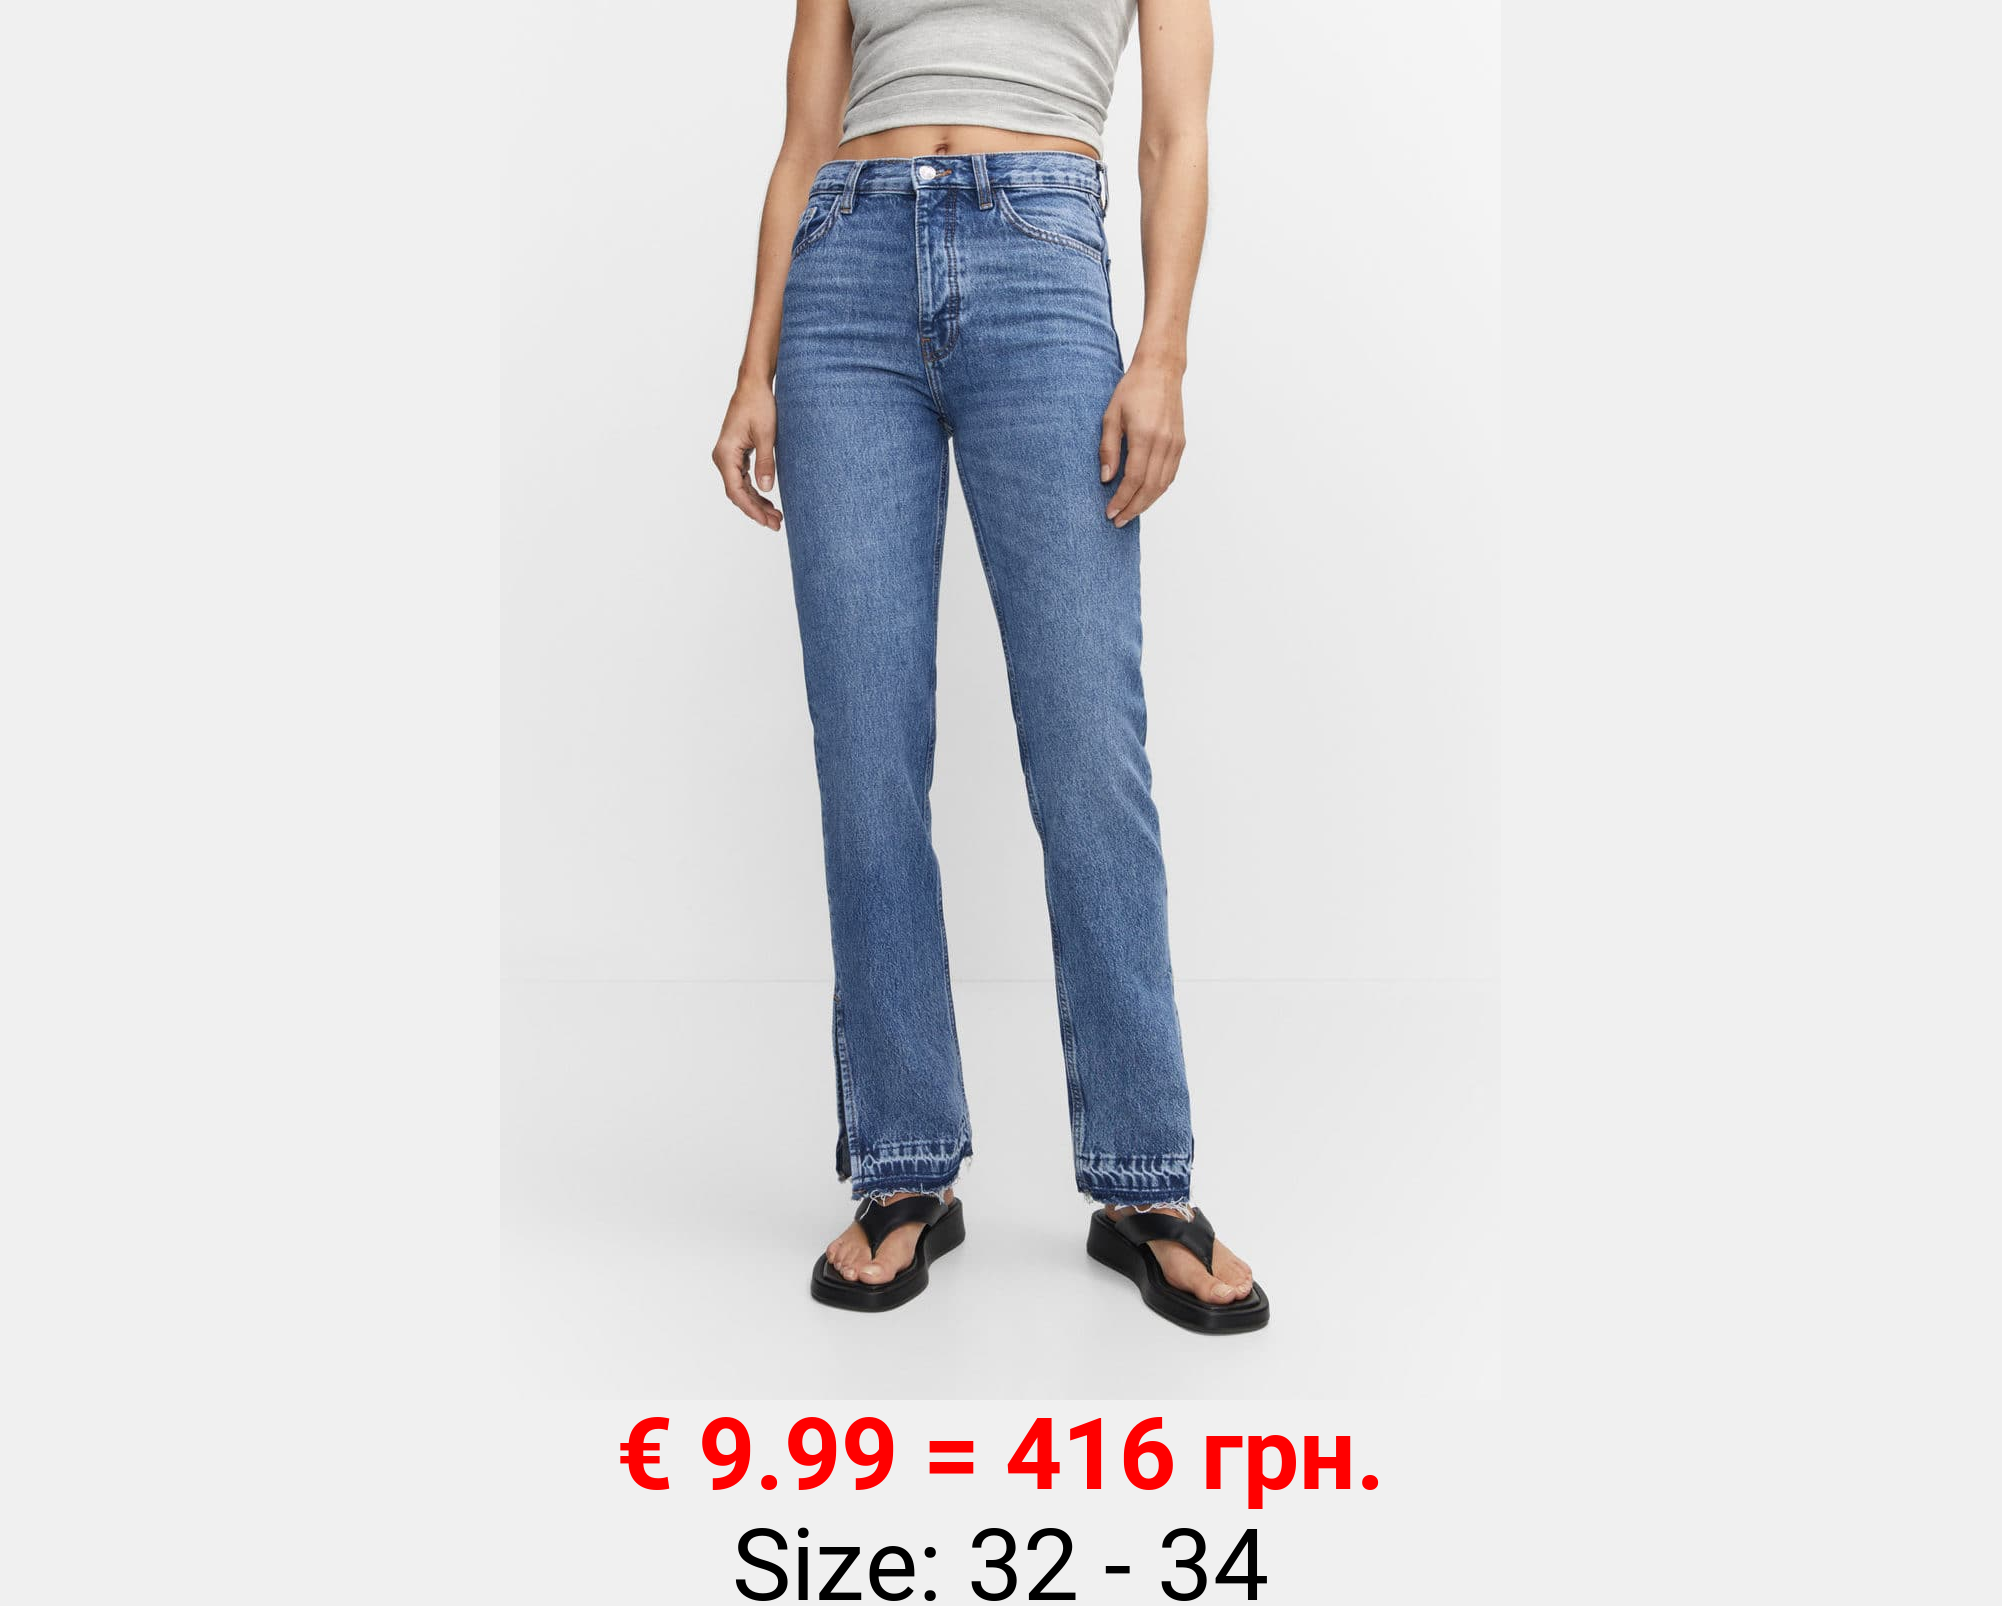 Jeans rectos tiro alto aberturas